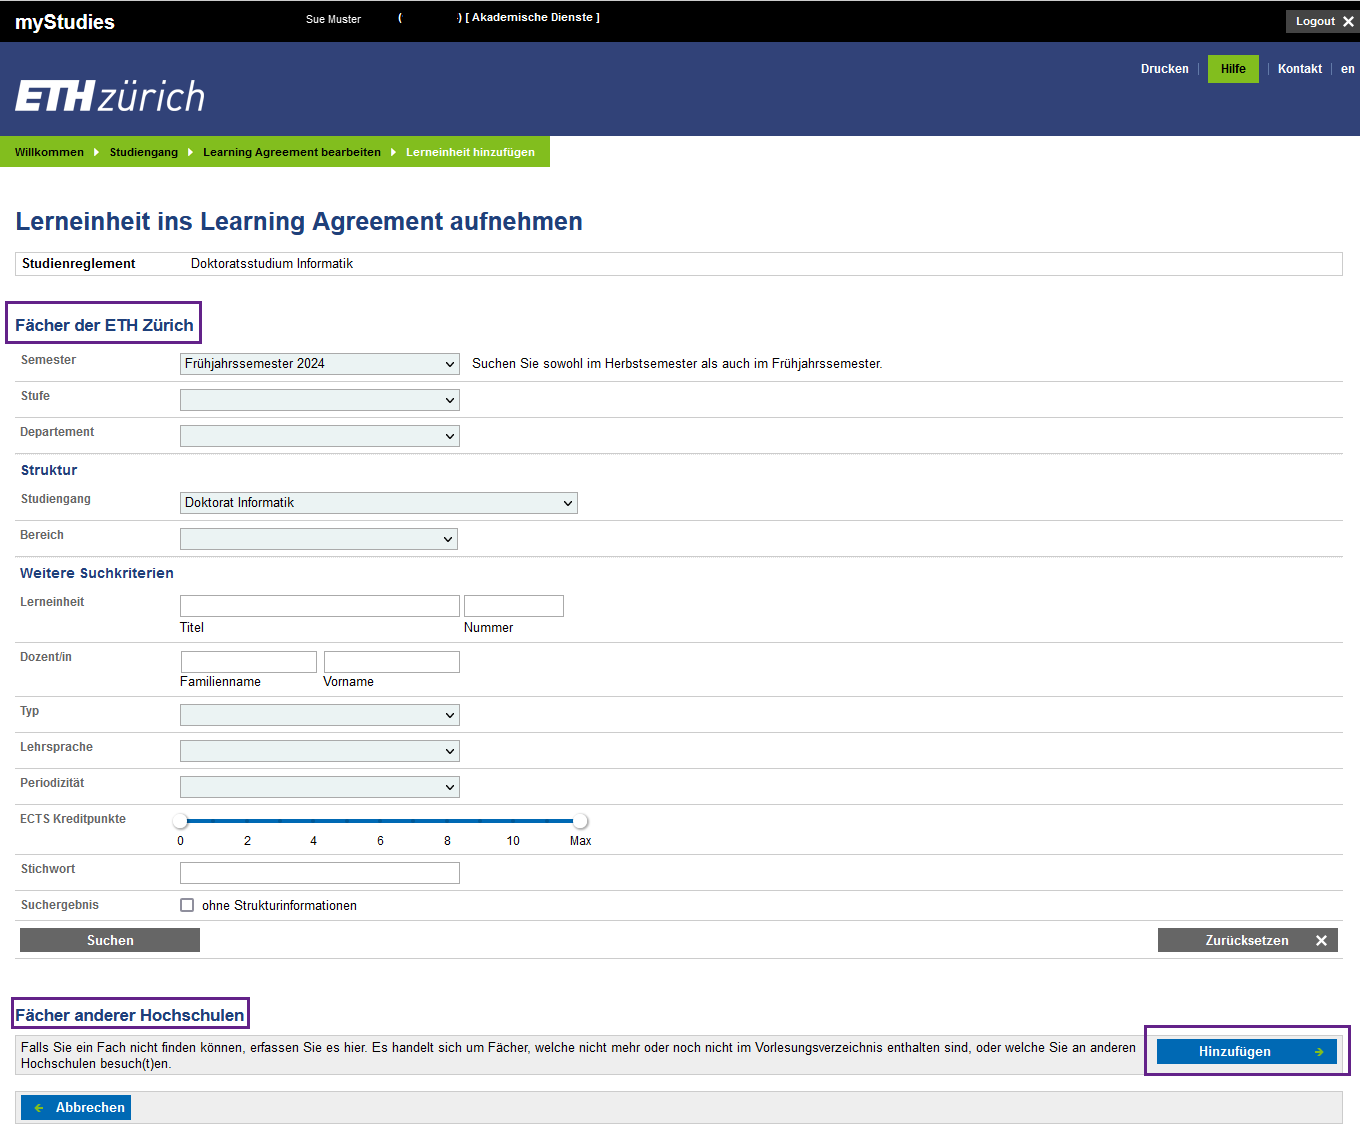 Vergrösserte Ansicht: Ein Screenshot aus myStudies wird gezeigt. Der Screenshot zeigt das Hinzufügen von Lerneinheiten über die Suche im Vorlesungsverzeichnis oder das manuelle Hinzufügen von Lerneinheiten anderer Hochschulen.